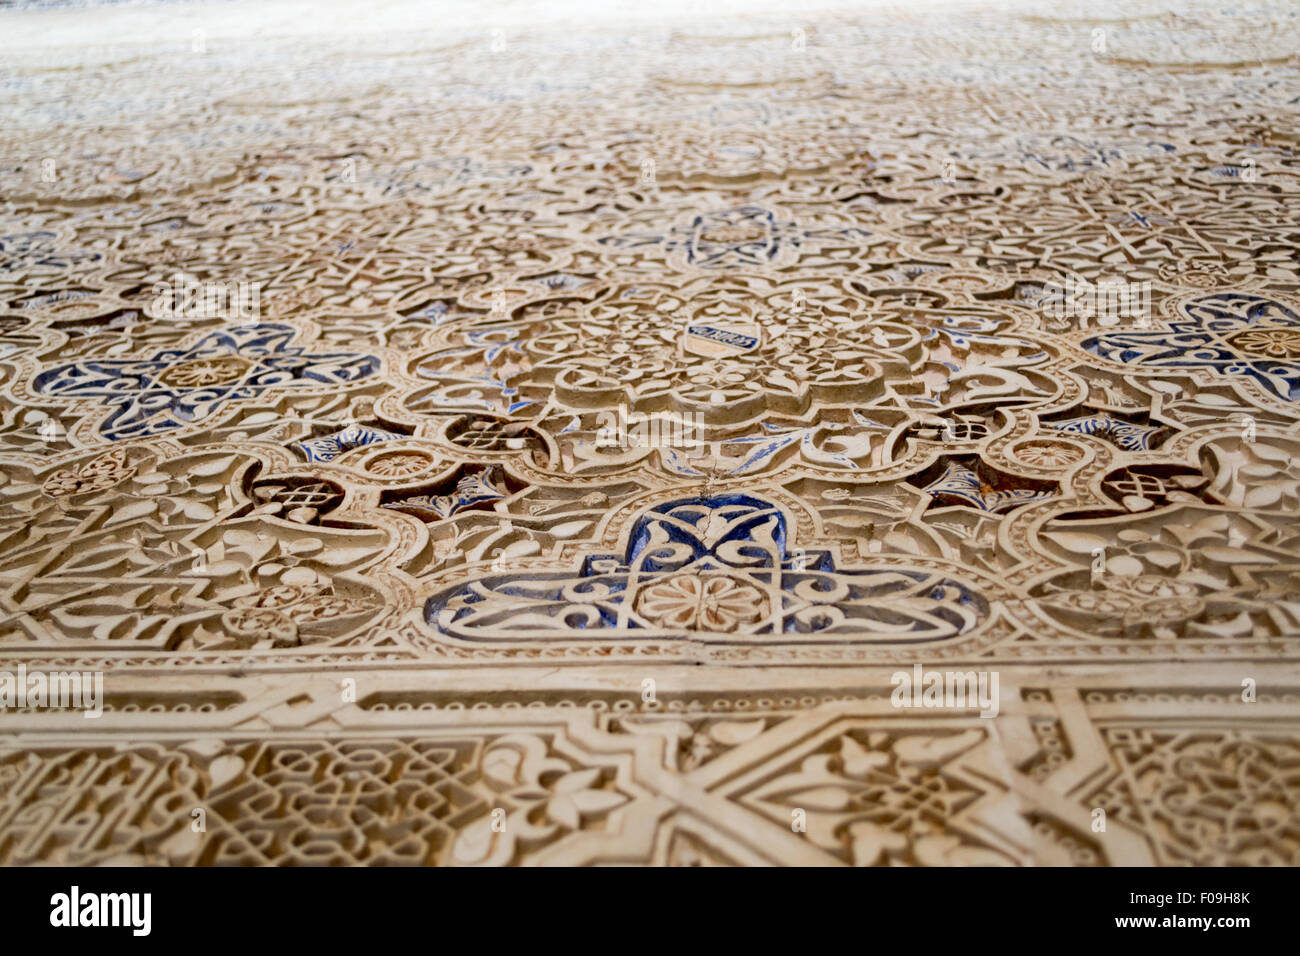 Alhambra Palace si trova a Granada (Spagna) è un master pice della islamico/architettura musulmana in Europa Foto Stock